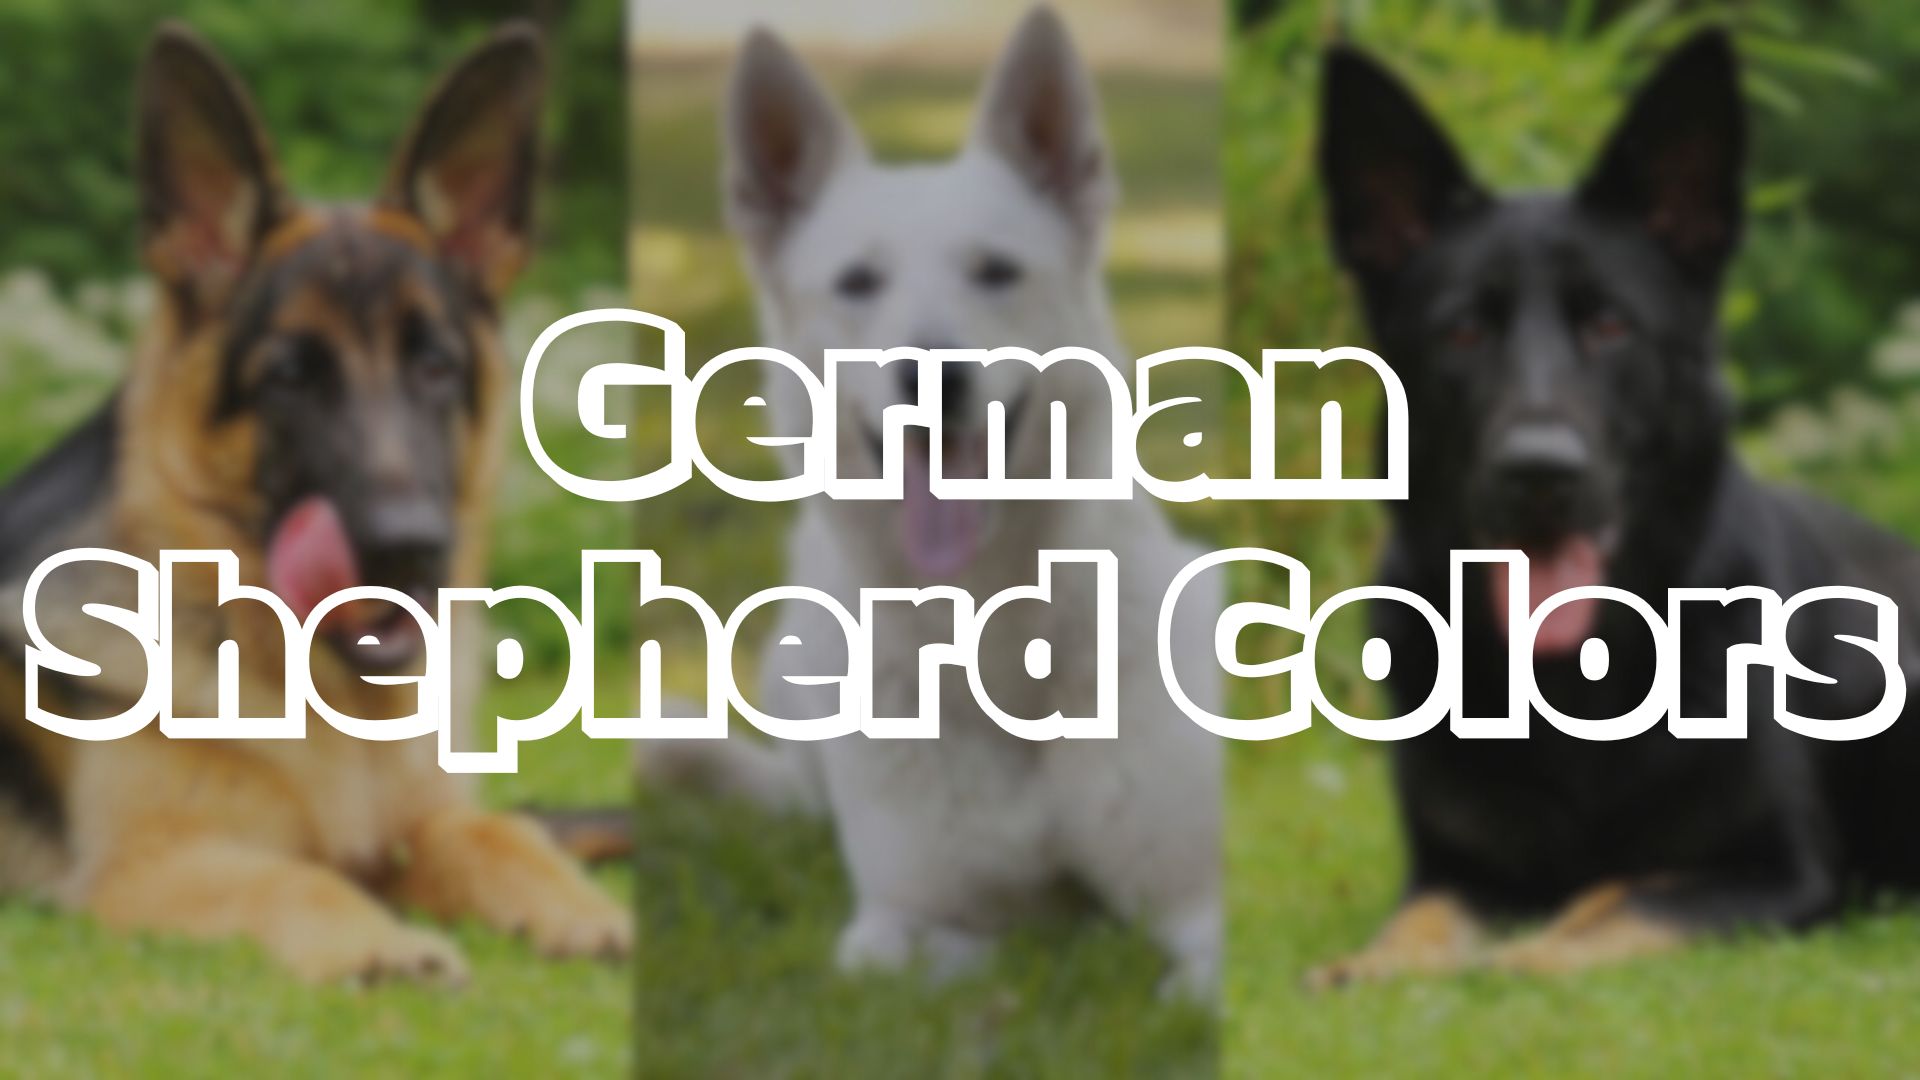 German Shepherd Colors